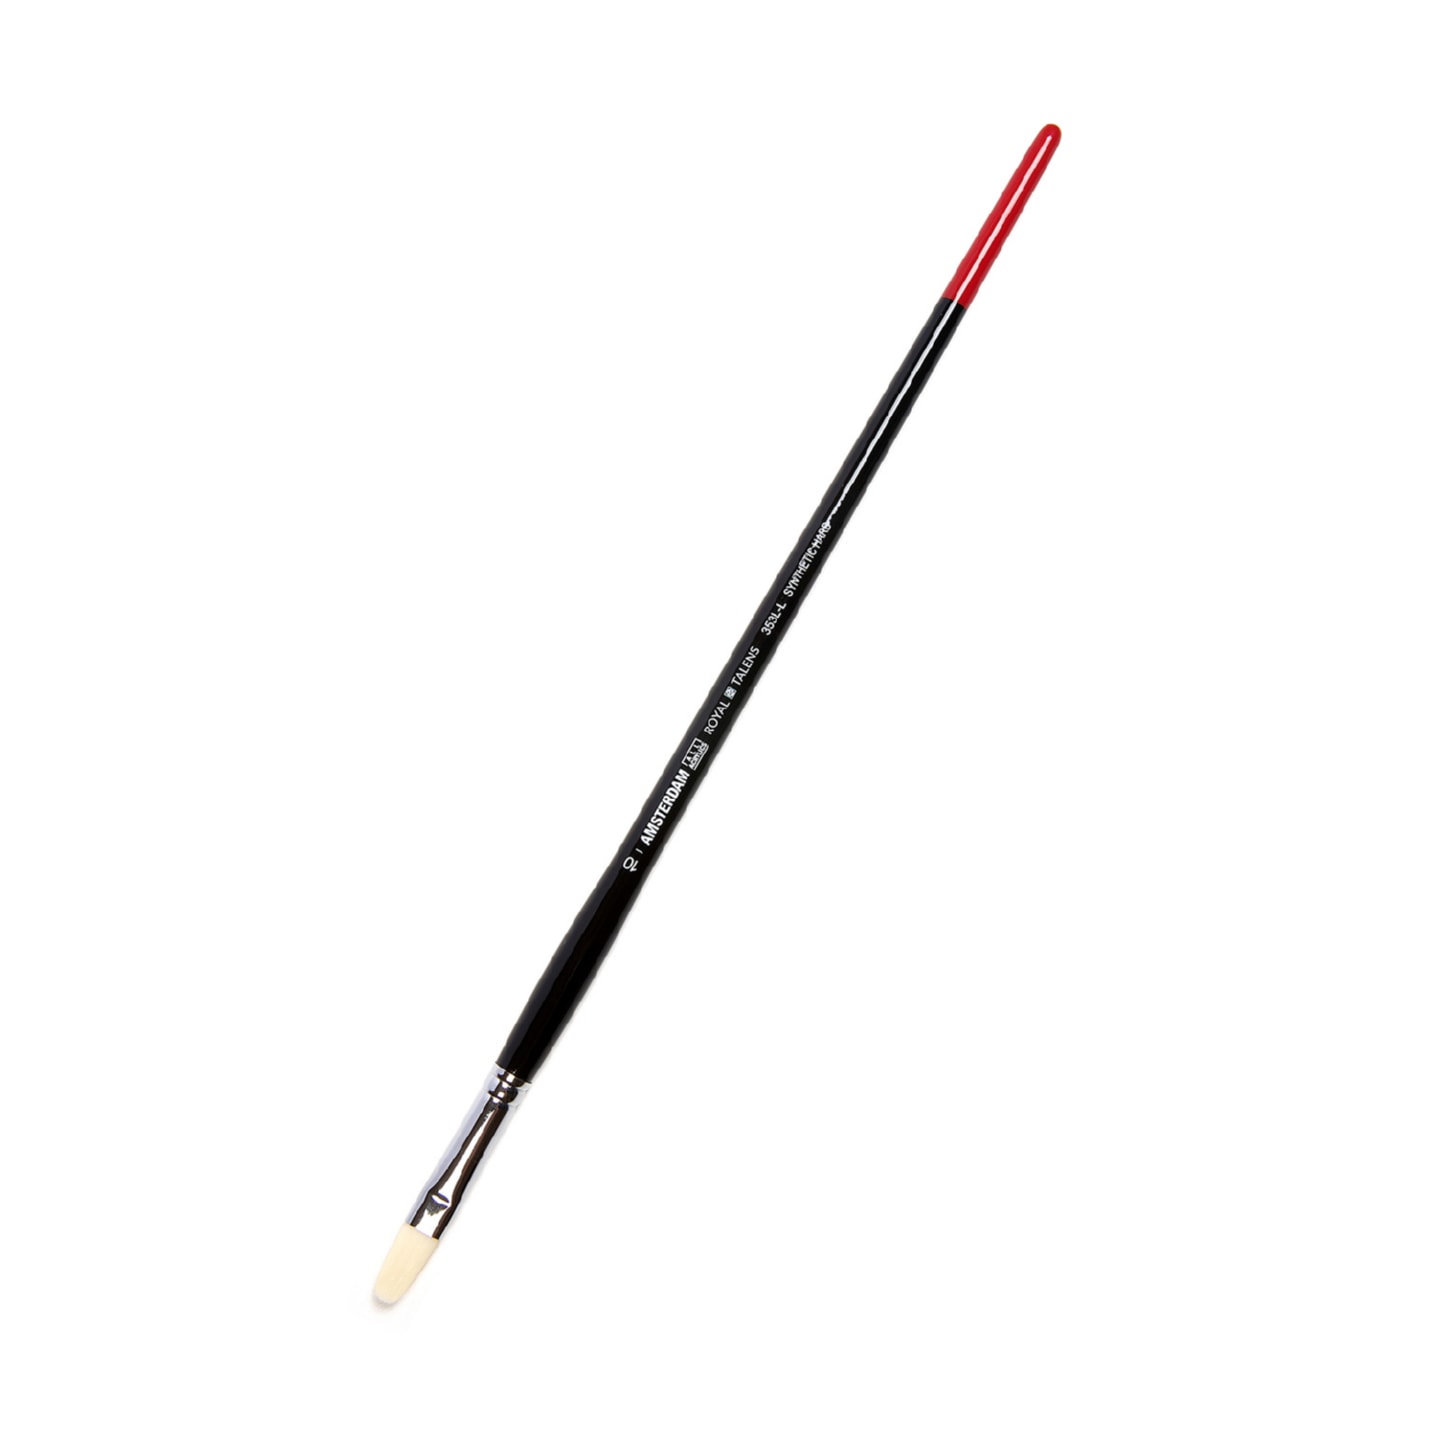 Кисть для акрила Amsterdam 353L жесткая синтетика овальная удлиненная ручка длинная 5 шт/упак 6 размеров в ассортименте